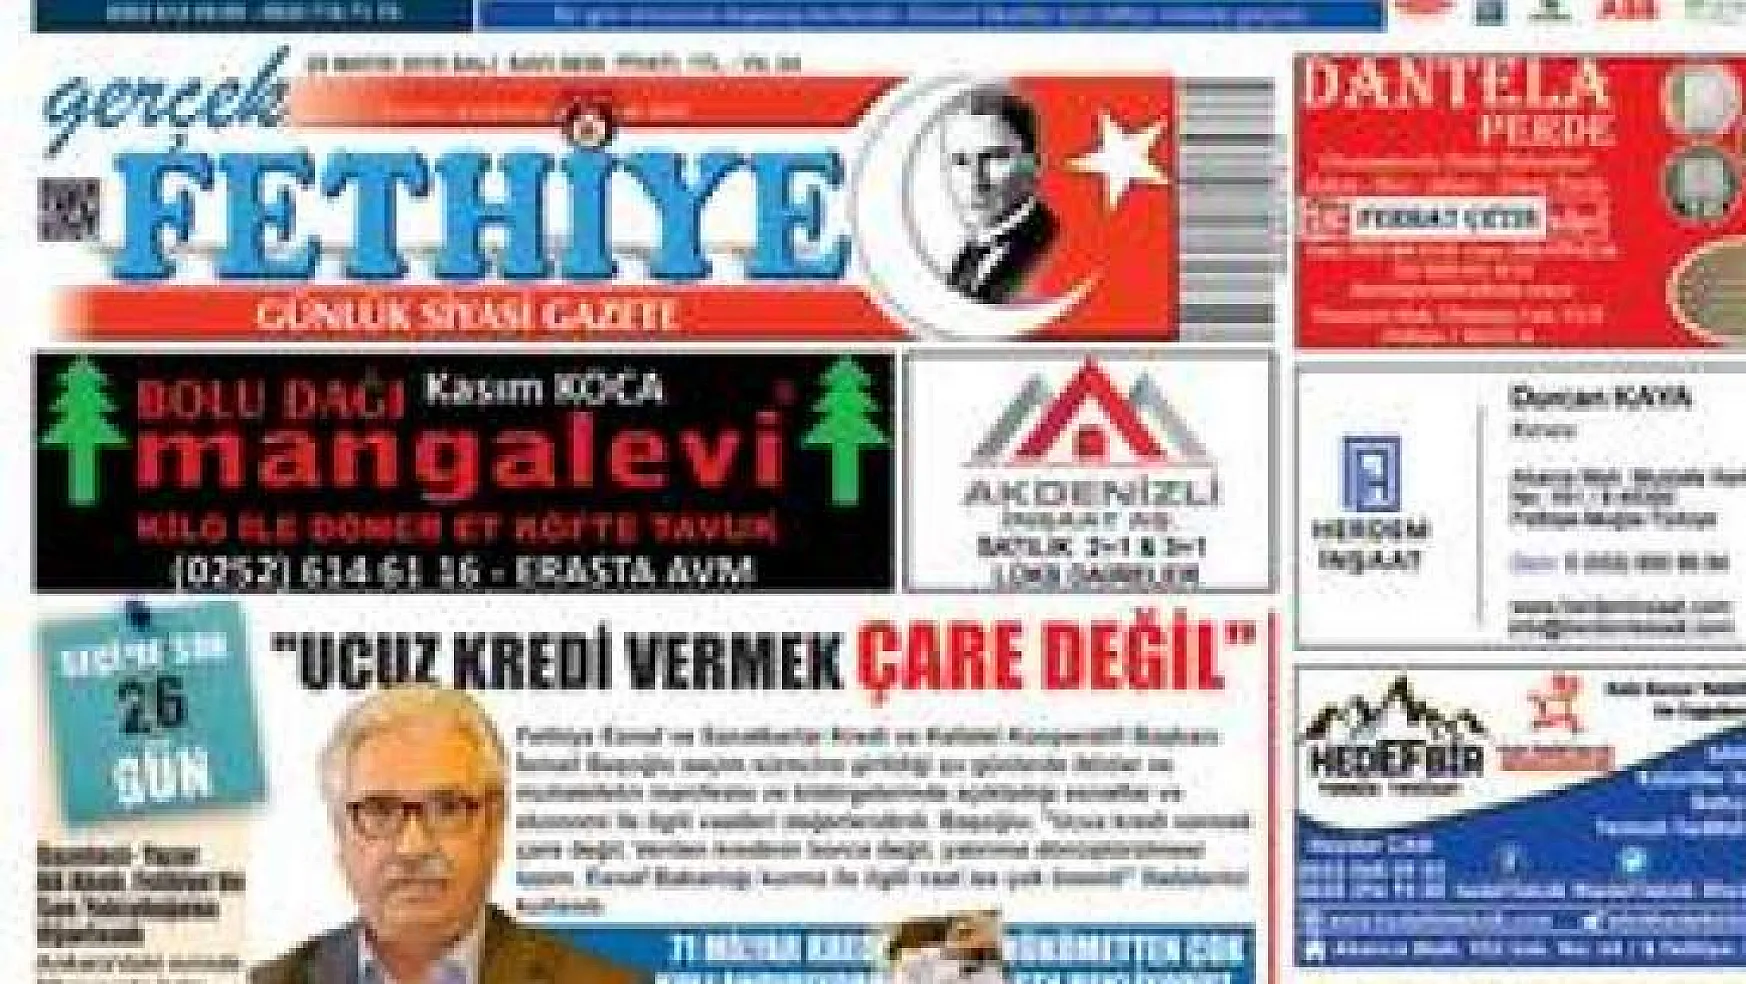 Gerçek Fethiye Gazetesi 29 Mayıs 2018